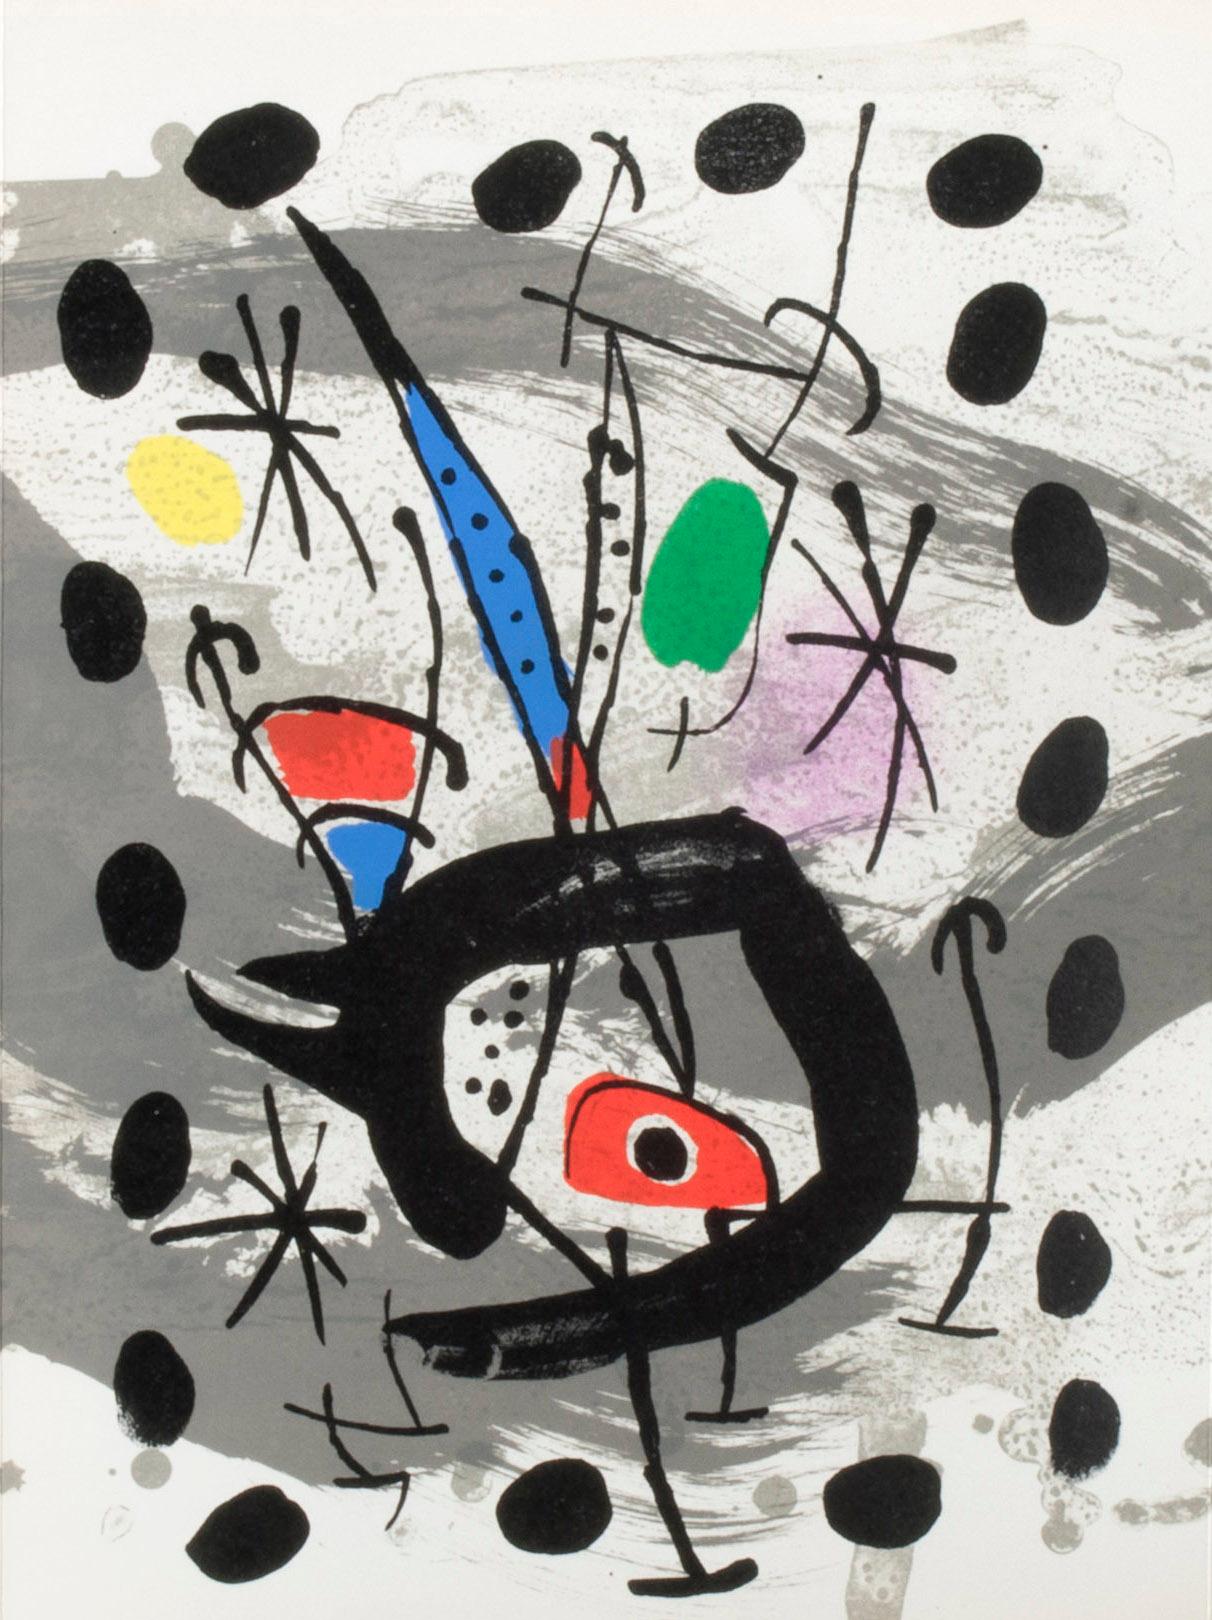 Oiseau solaire, oiseau lunaire, etincelles (Solar Bird, Lunar Bird, Sparks) - Abstract Print by Joan Miró